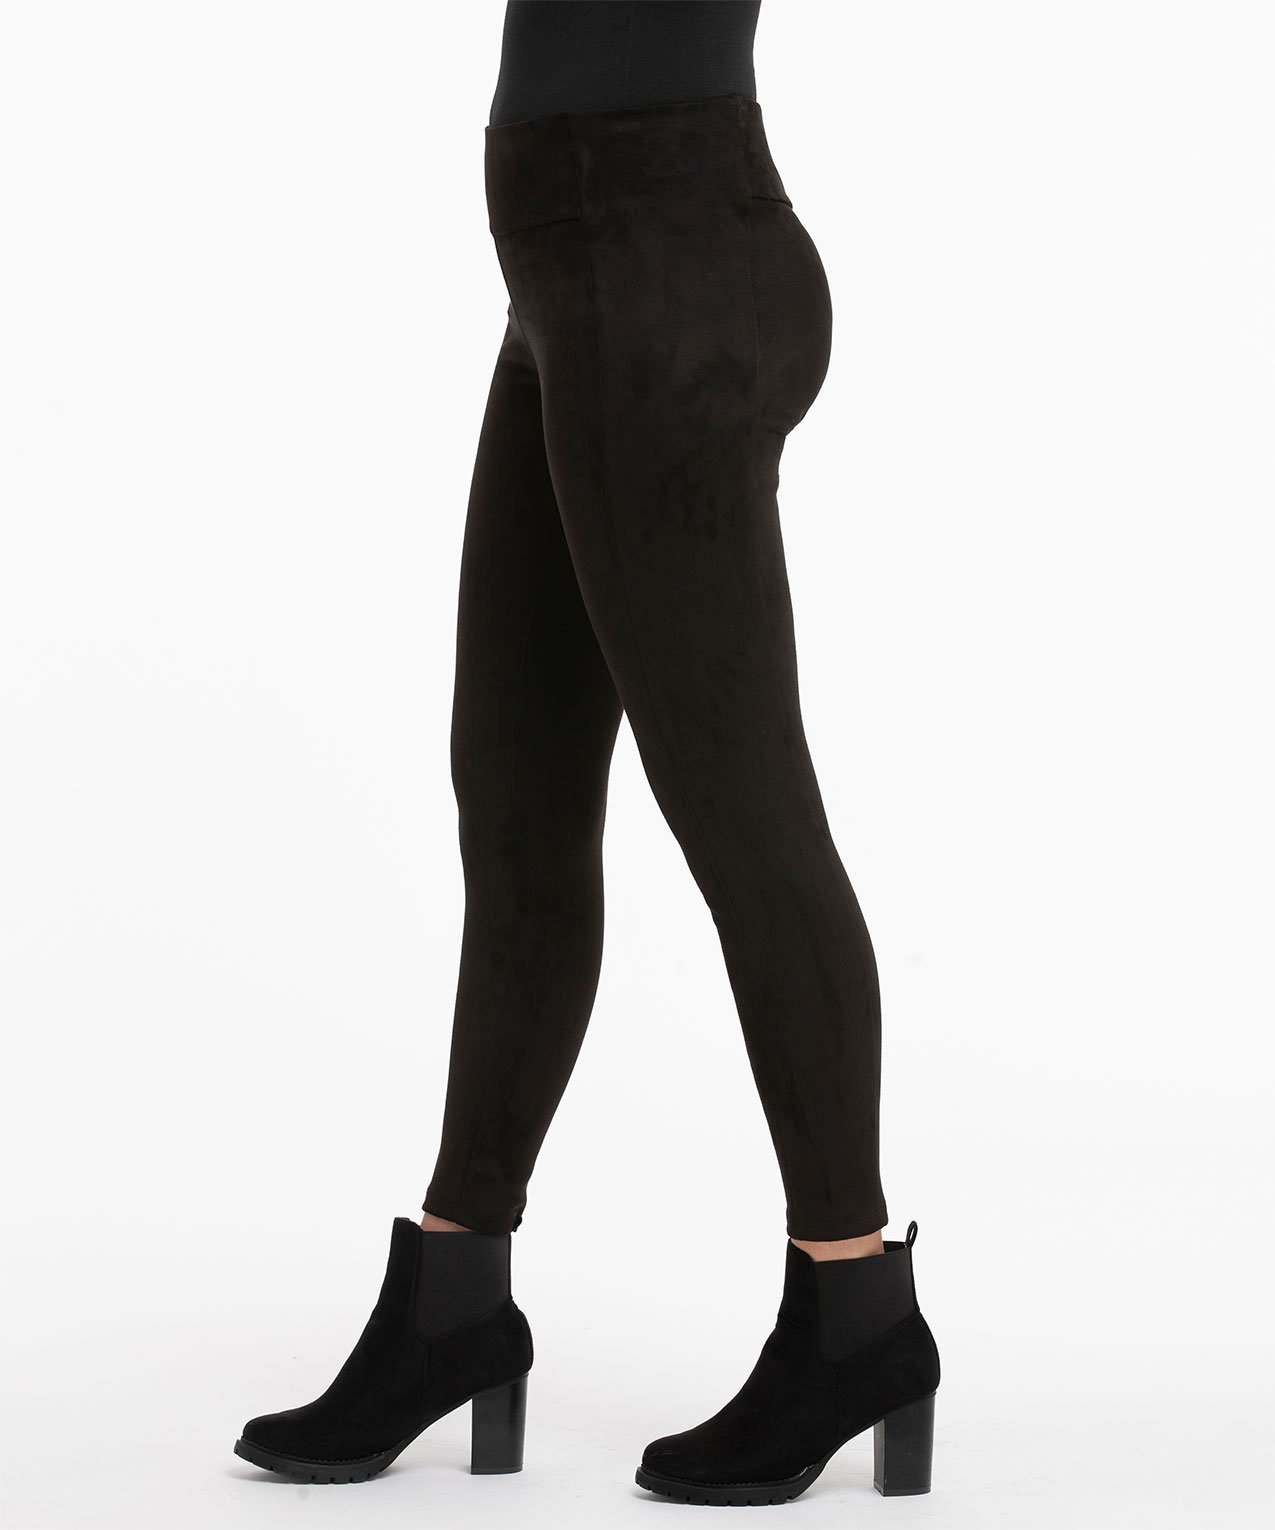 ASSETS by SPANX Women's Velvet Leggings - Black XL